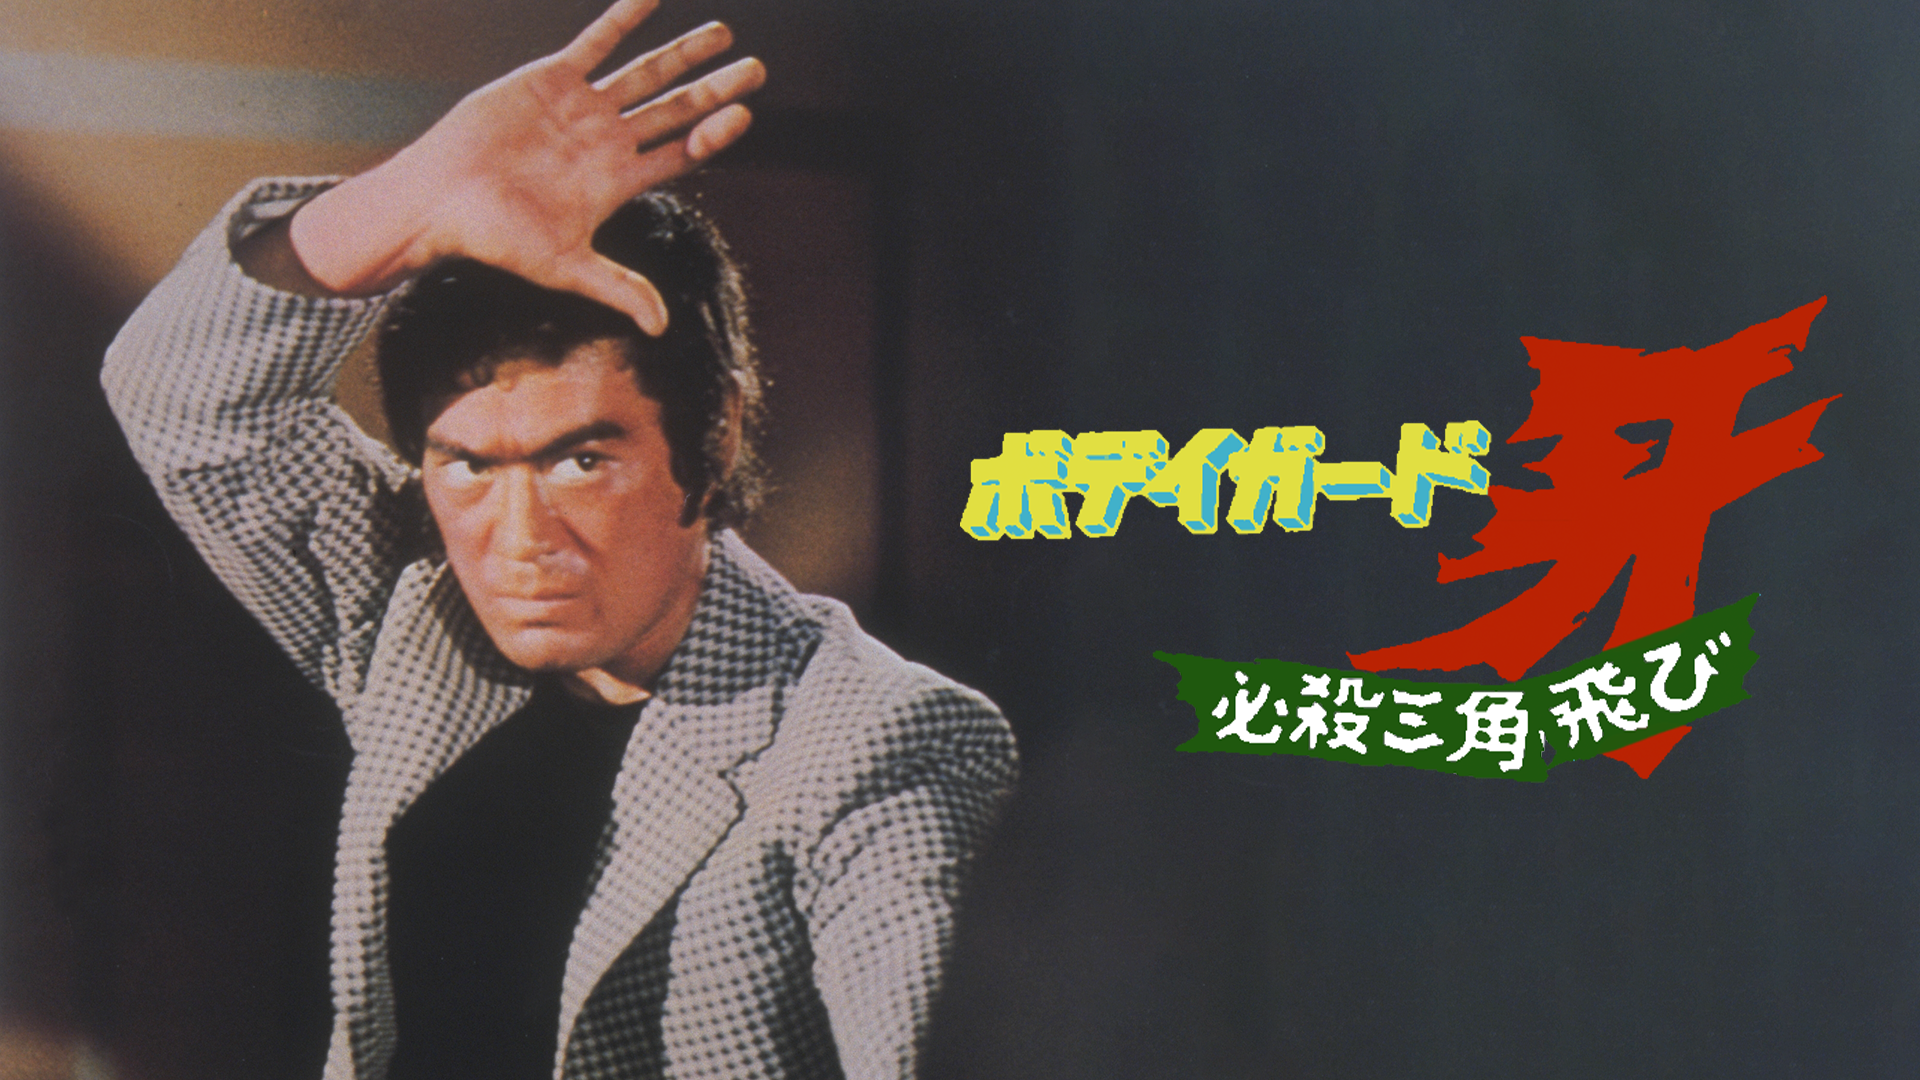 ボディガード・牙 必殺三角飛び(邦画 / 1973) - 動画配信 | U-NEXT 31 